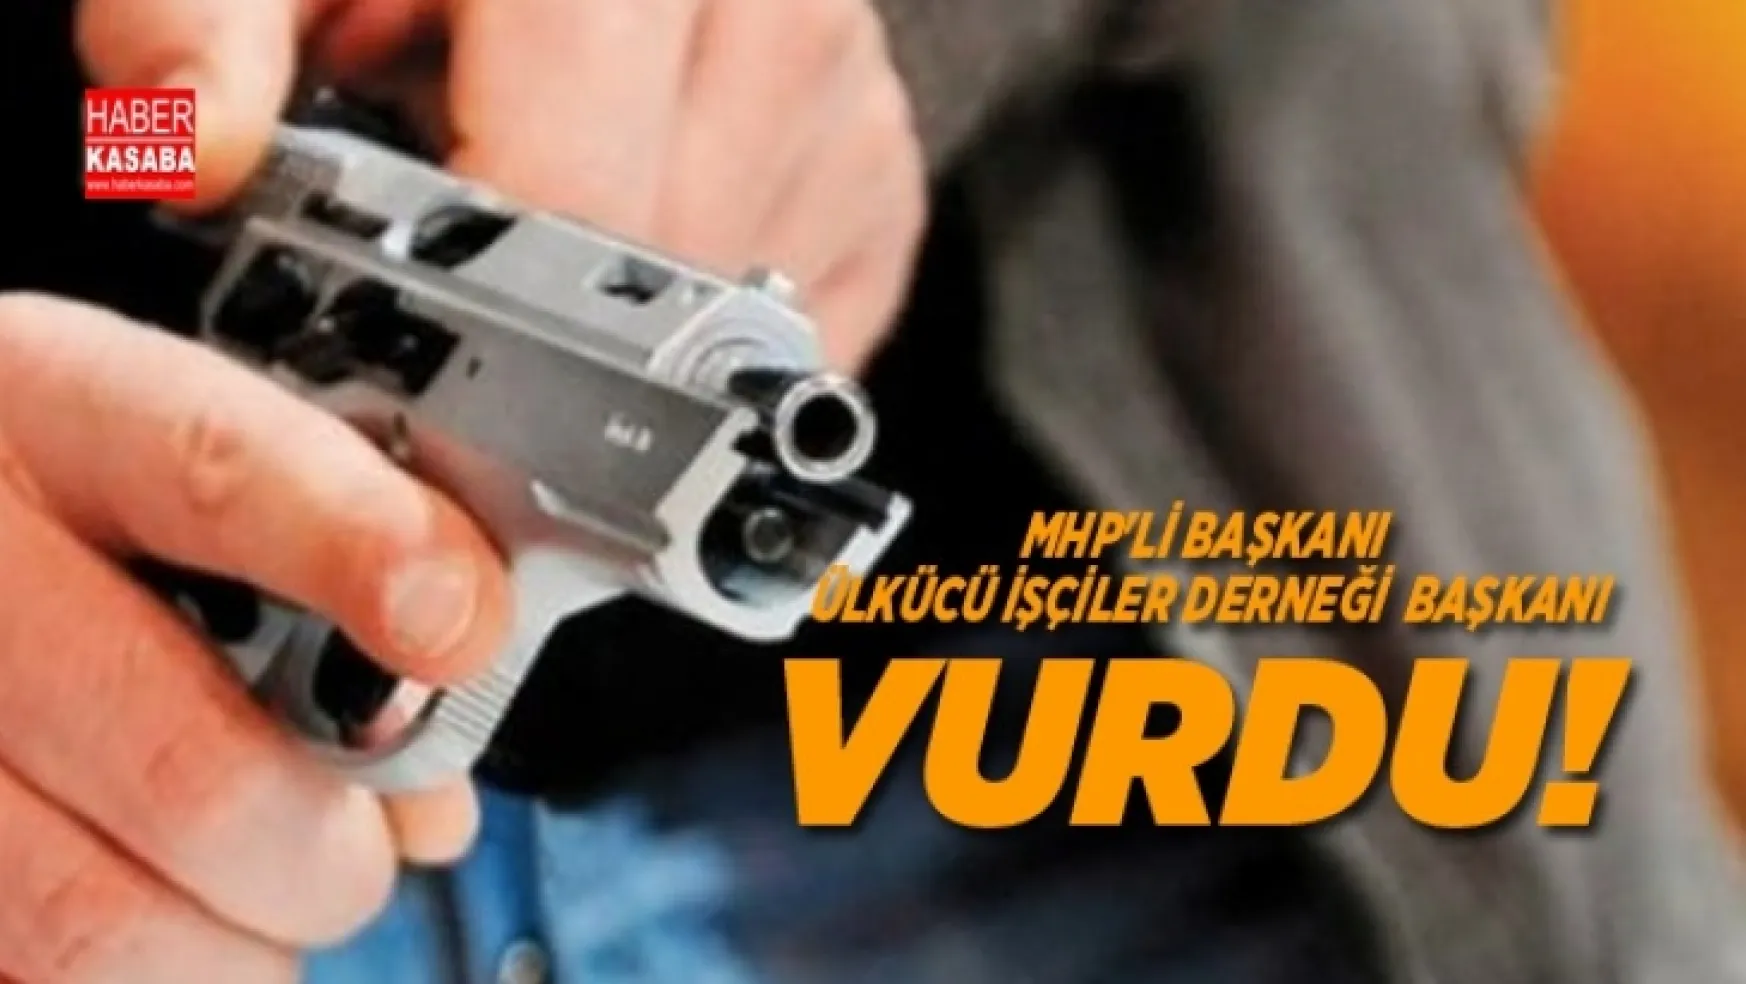 Ülkücü İşçiler Derneği başkanı MHP'li Başkanı, vurdu